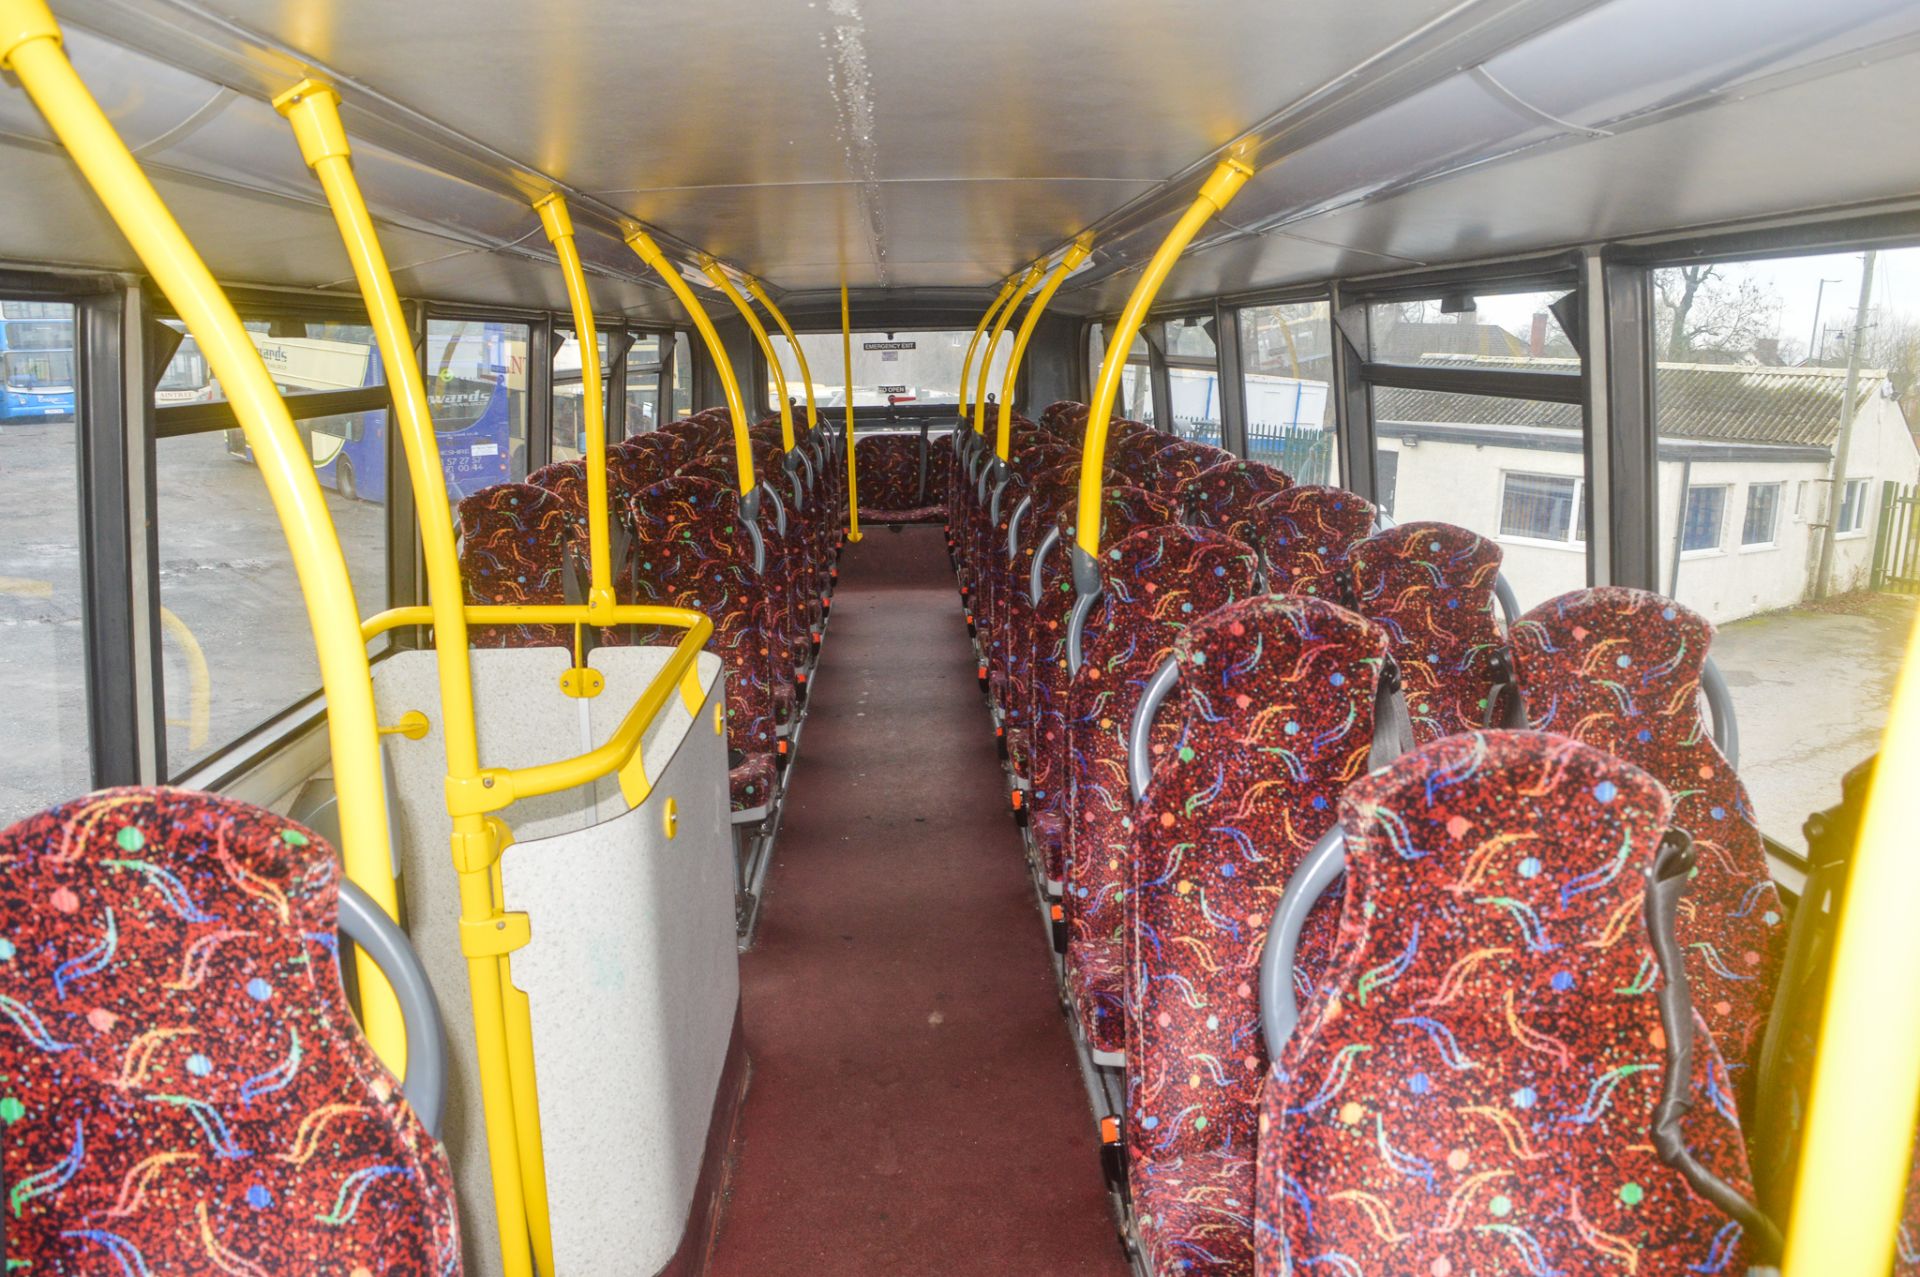 Alexander Dennis Trident 2 Enviro 400 81 seat double deck service bus Registration Number: SN58 - Bild 9 aus 12